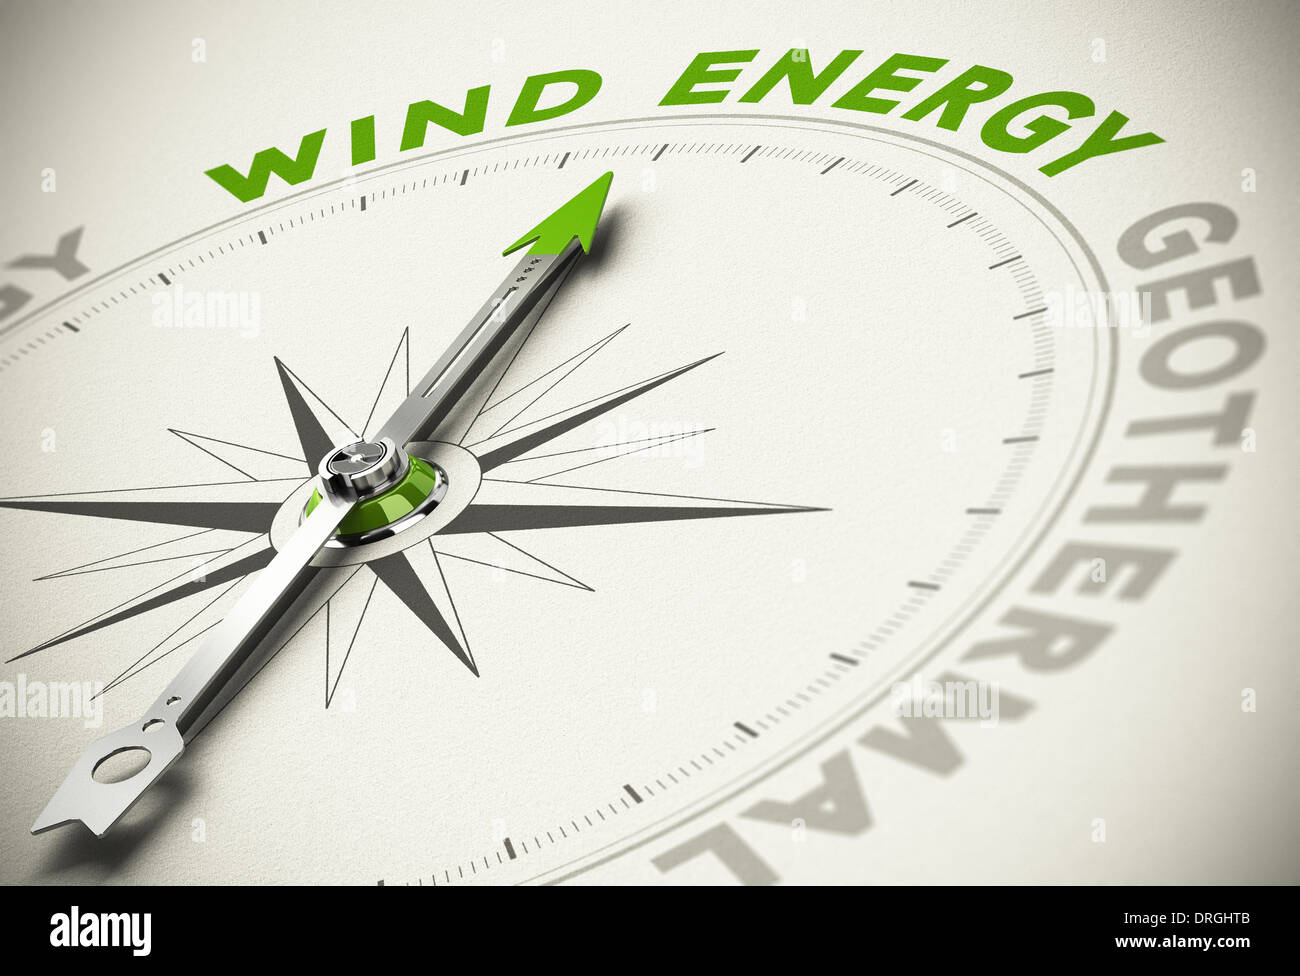 Kompass mit Nadel zeigt den Text Windenergie - grüne und erneuerbare Energien Konzept Unschärfe-Effekt. Stockfoto